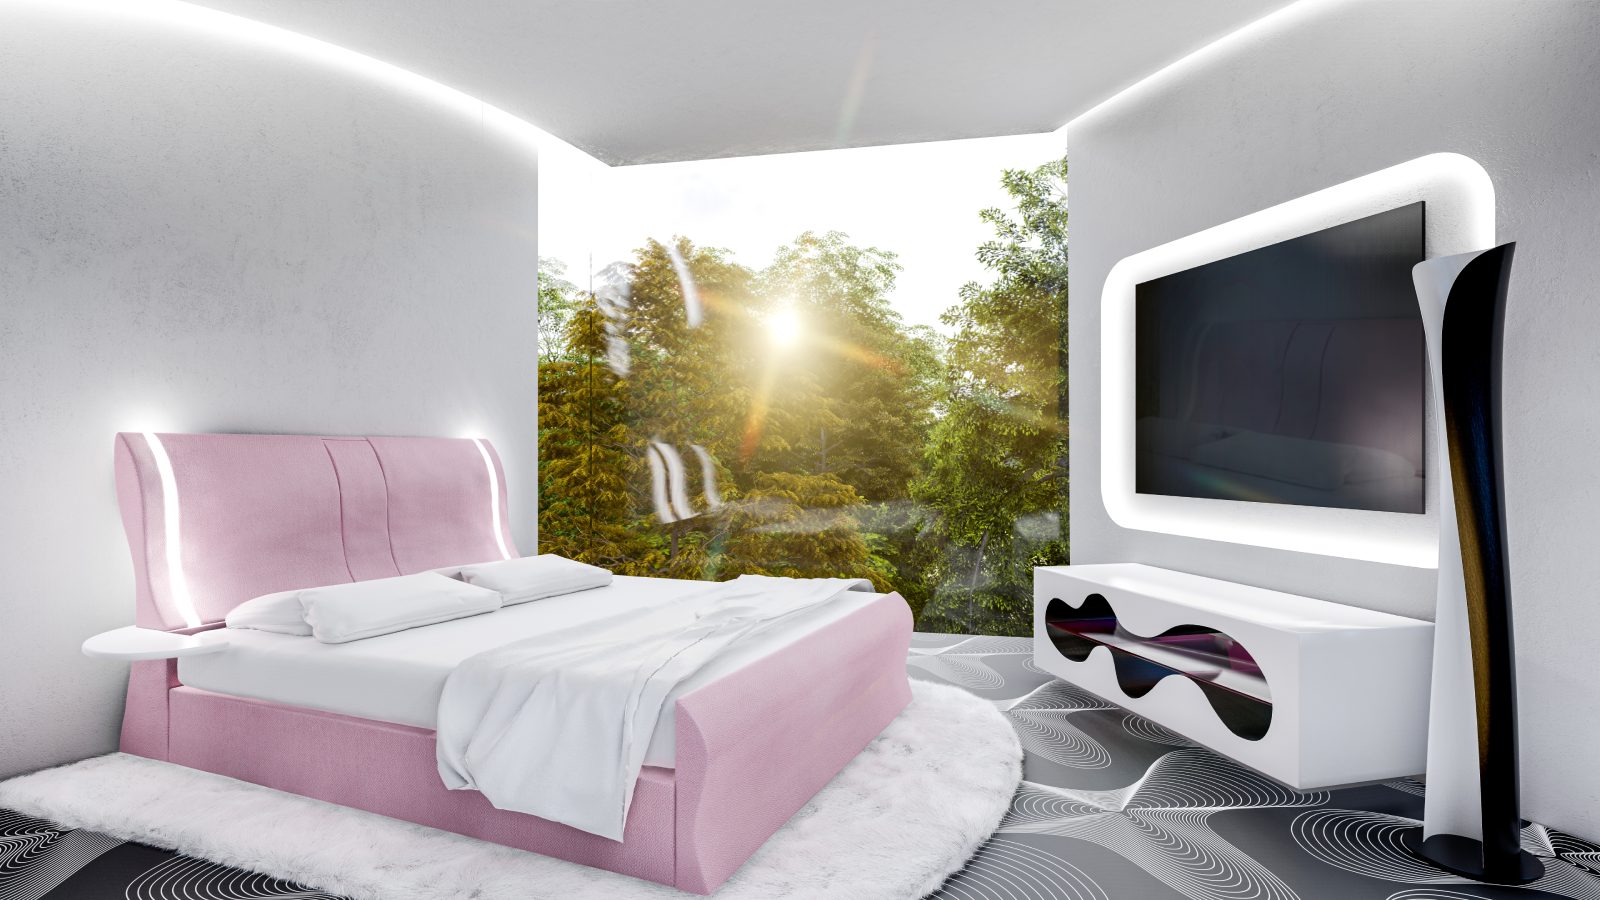 El dormitorio tiene también muy presente el ADN de Karim Rashid, con los tonos rosados de su cama Rioni para Dreamland o su mueble para televisión Kave Table de Bernini, que parece sacado de una obra de H.R. Giger. - imagen 4